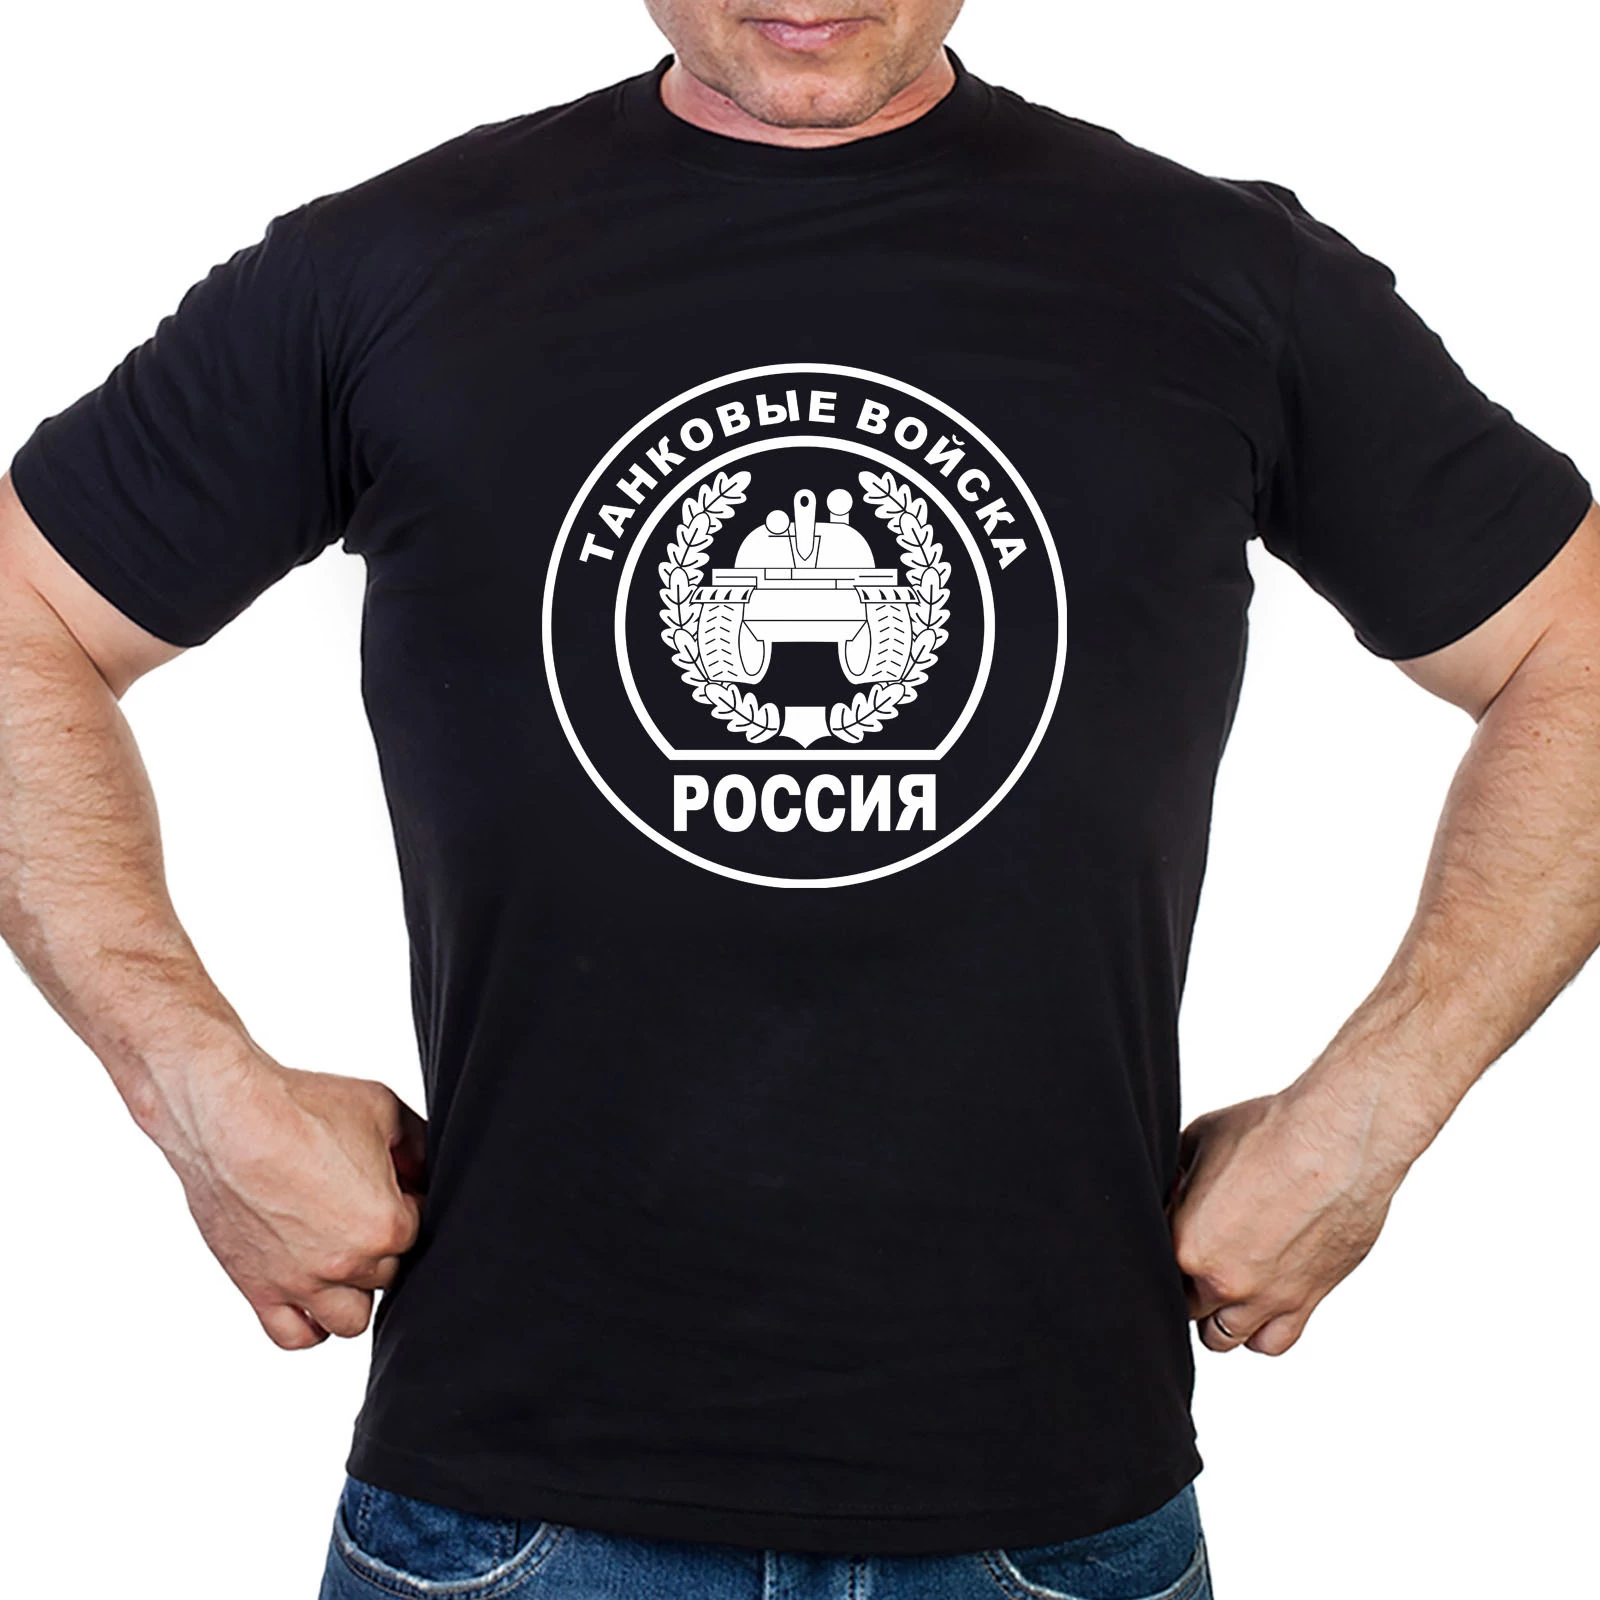 Черная футболка с эмблемой Танковых Войск